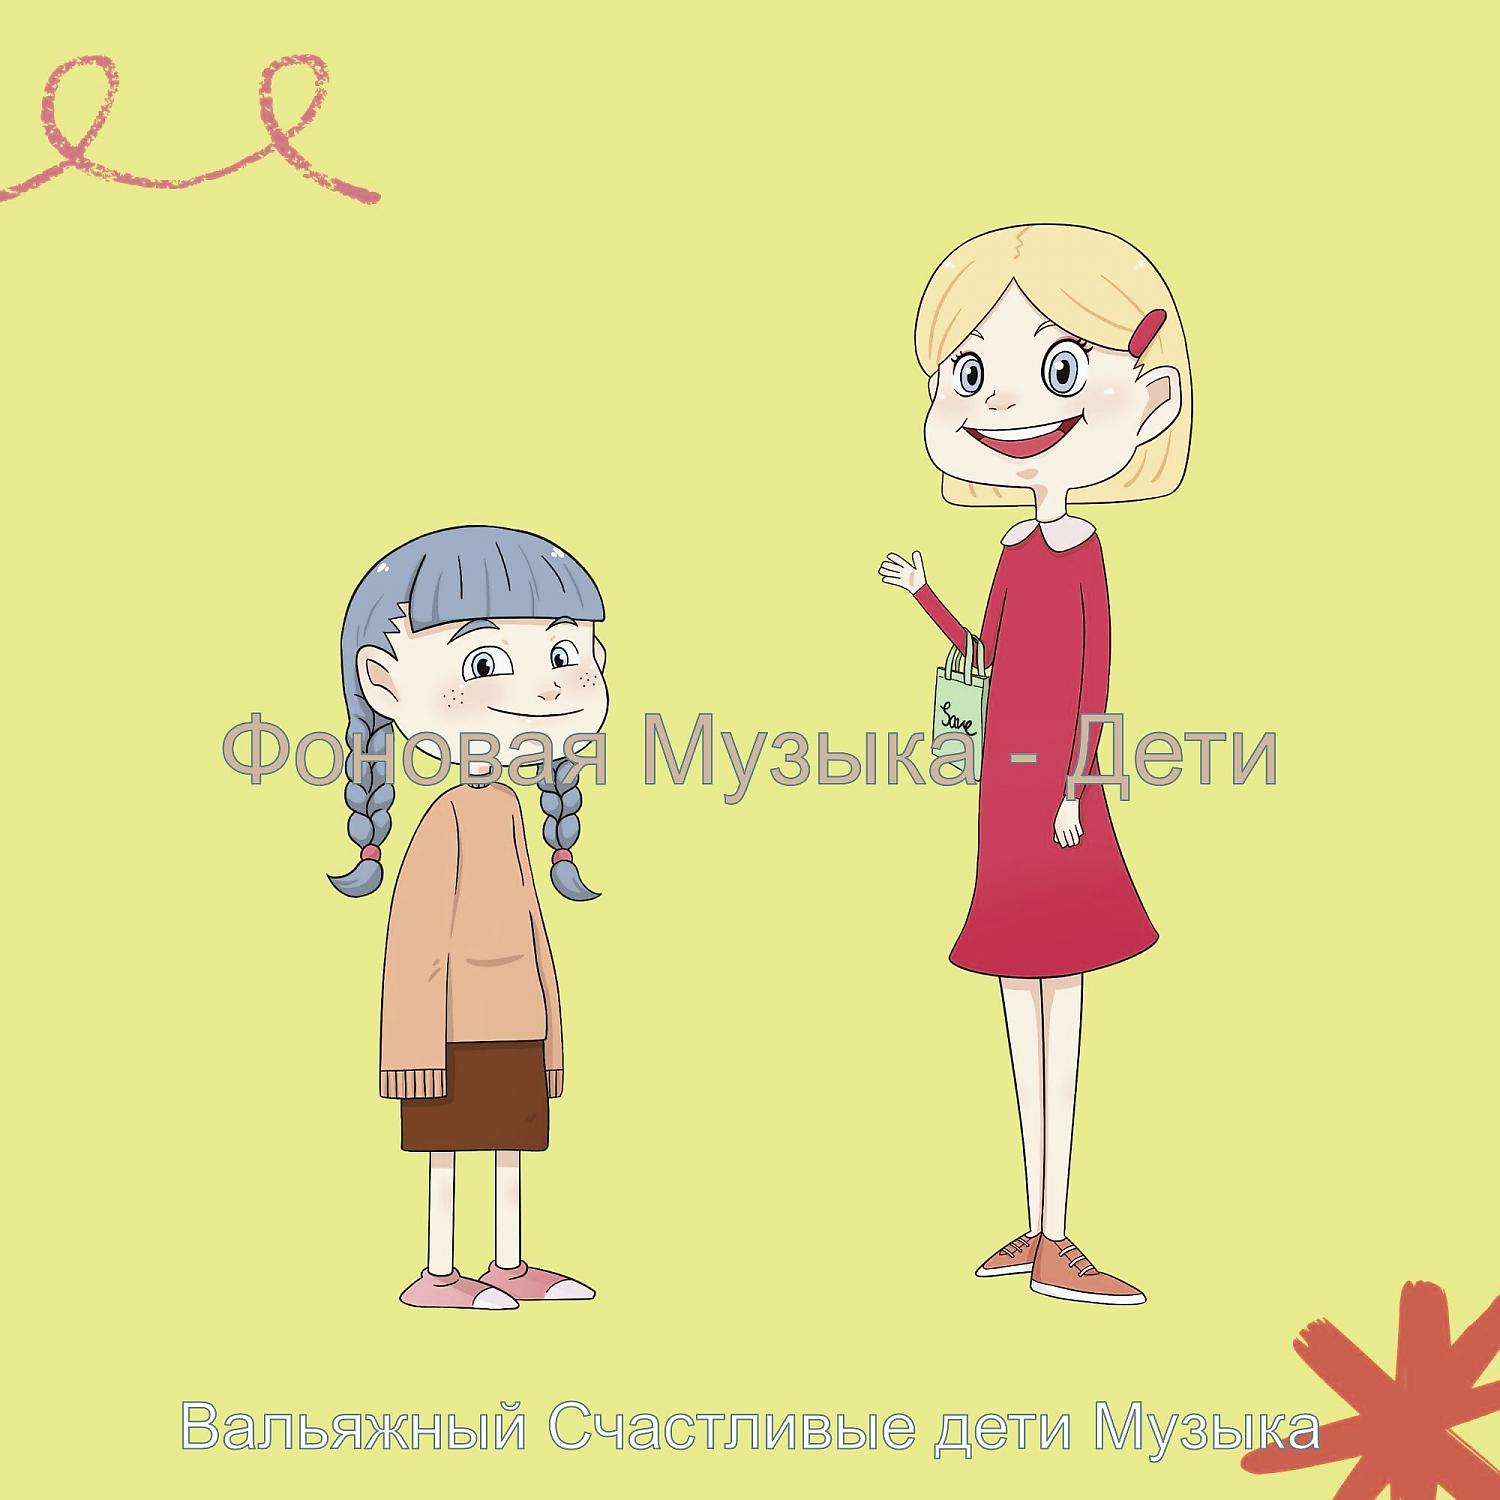 Постер альбома Фоновая Музыка - Дети